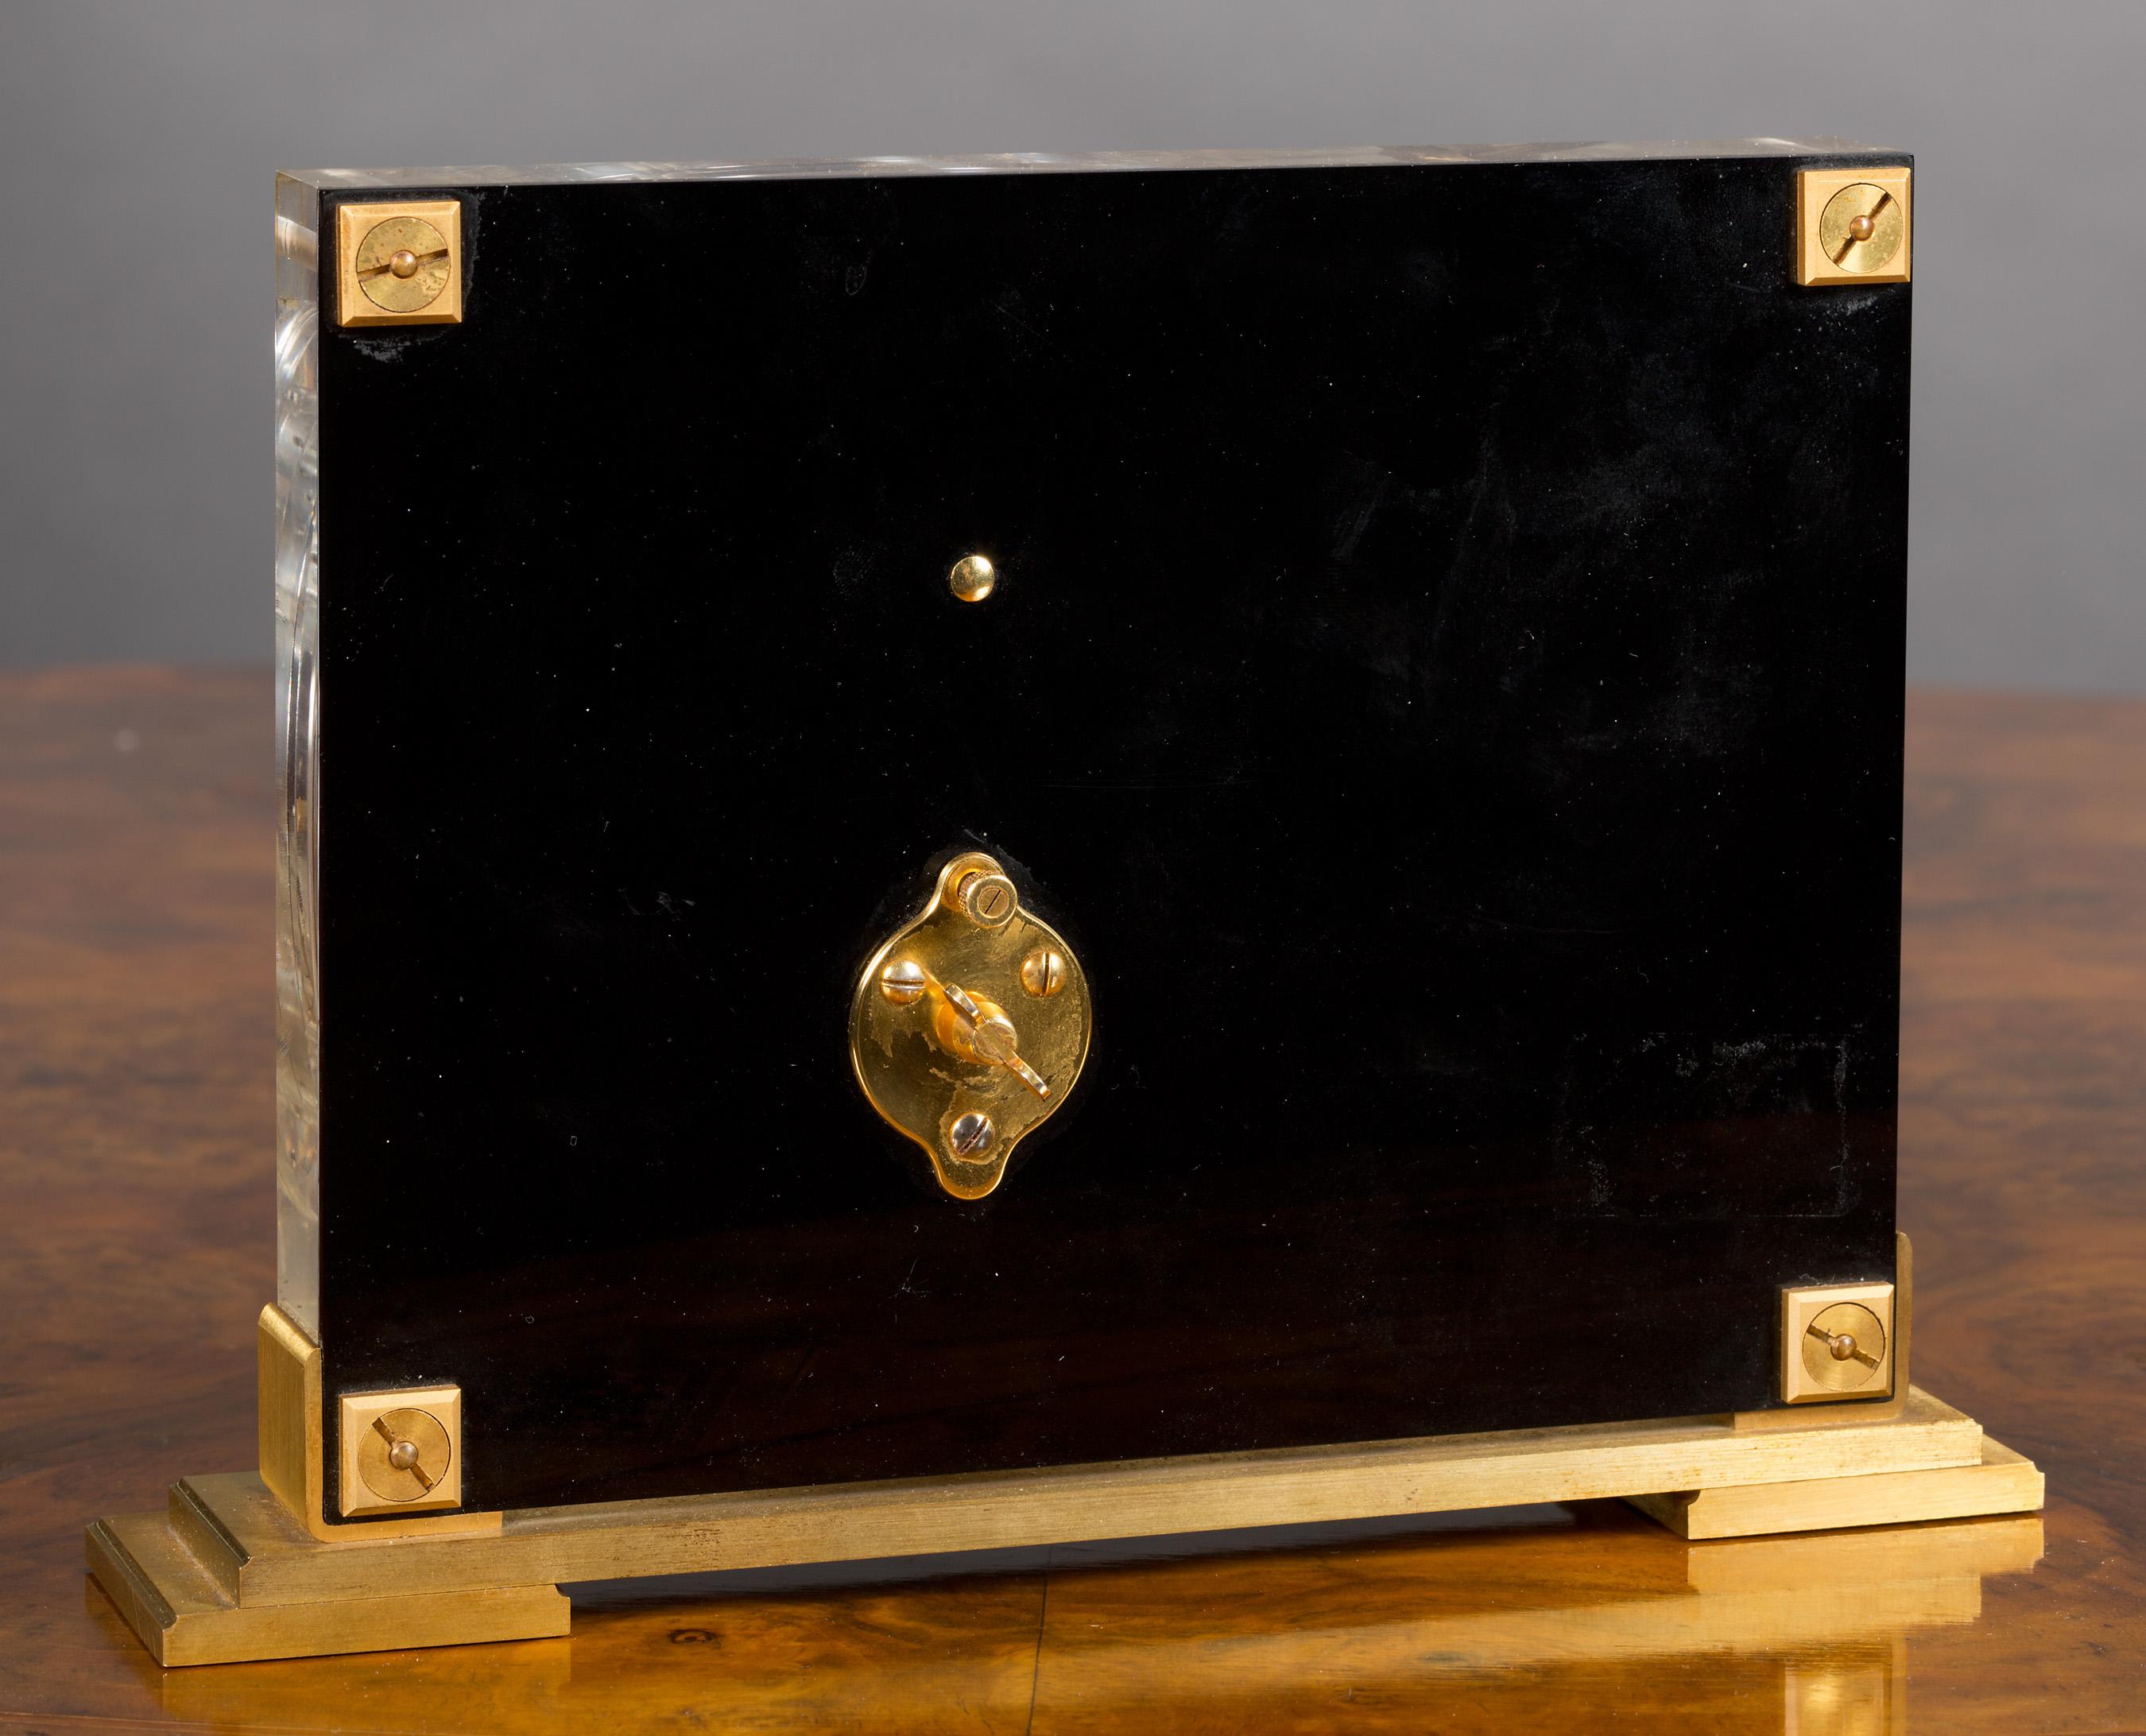 Pendule mystère de Jaeger-LeCoultre dans un boîtier en Lucite avec un beau décor de chinoiseries représentant un oiseau en vol et reposant sur une base à gradins dorée.

Mouvement huit jours 